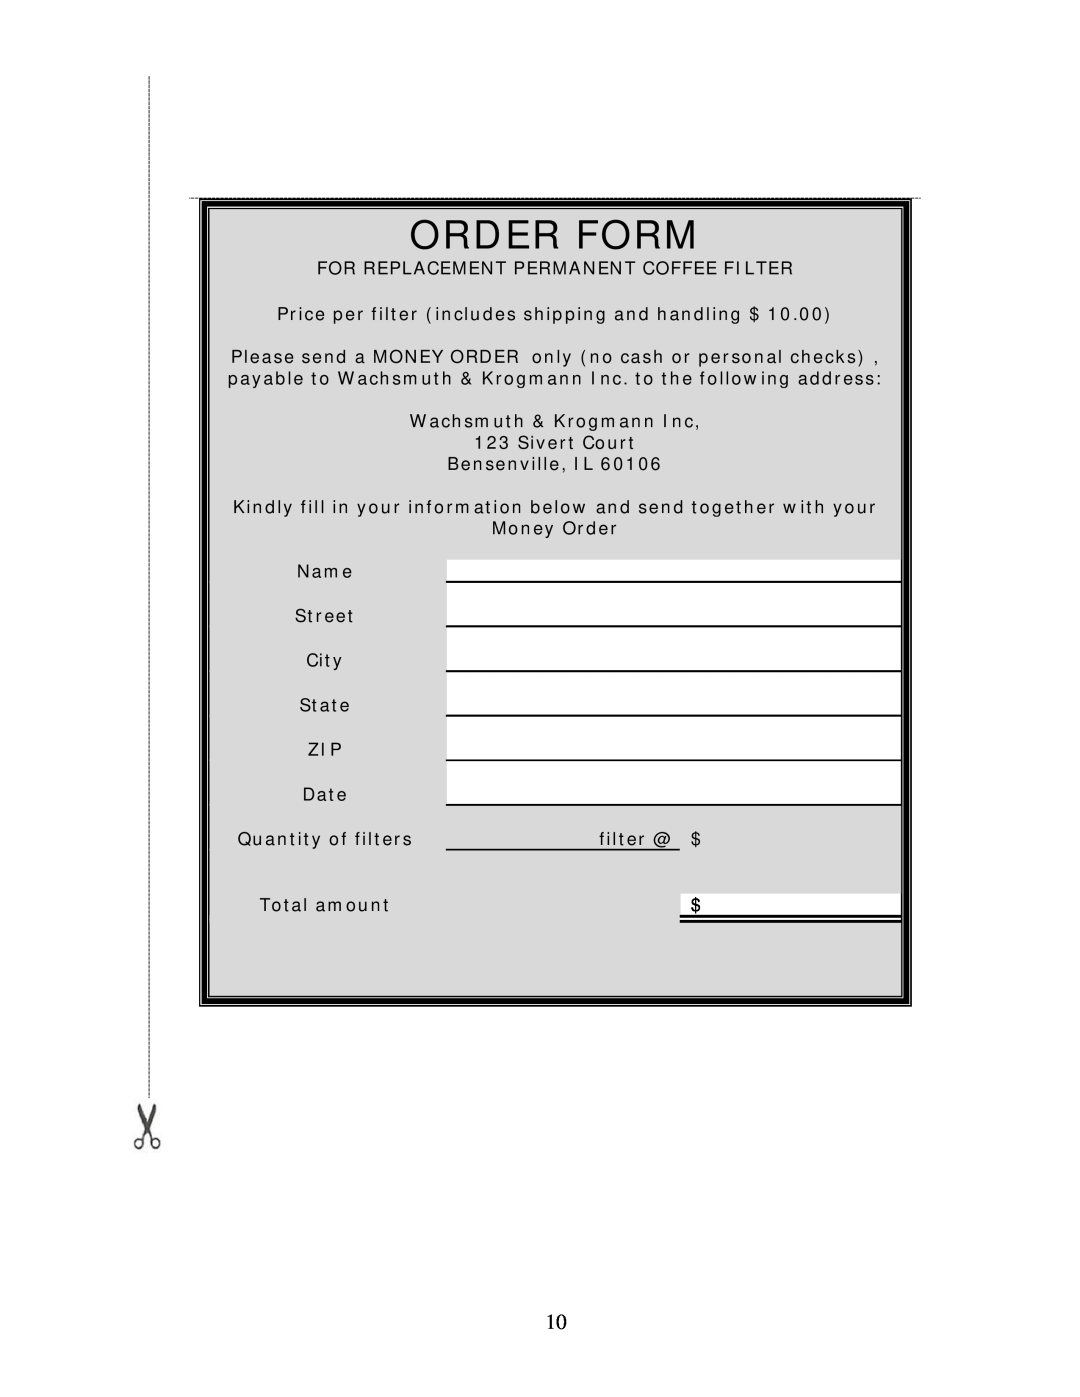 Wachsmuth & Krogmann XQ-698T manual Order Form 